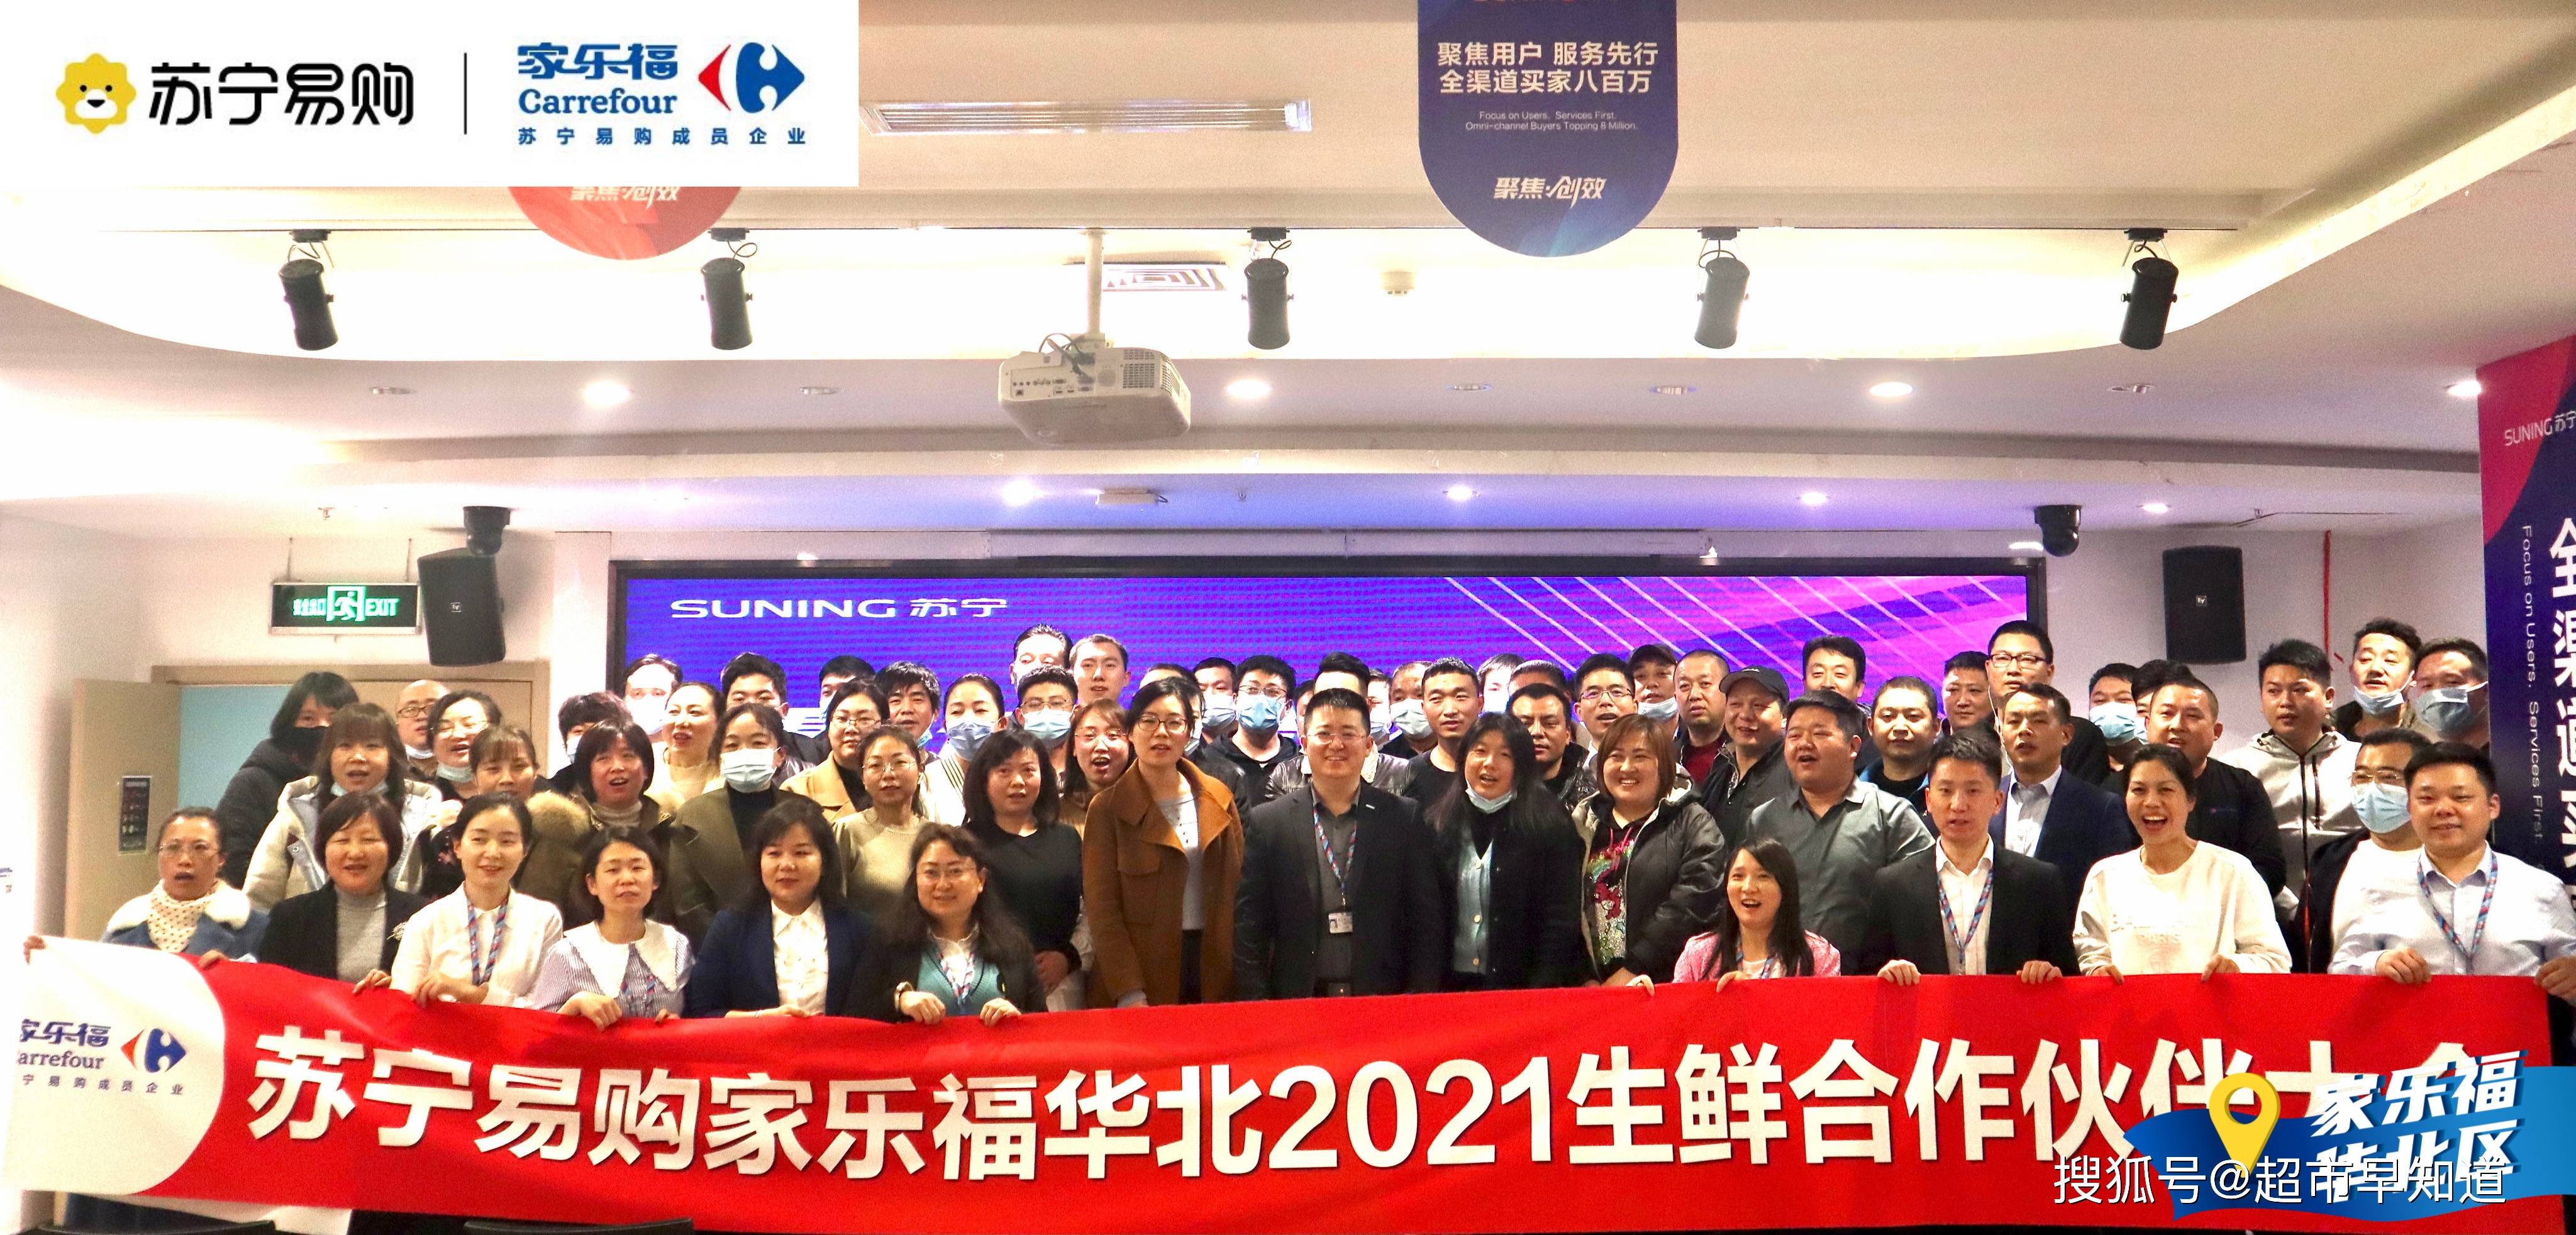 2021家乐福华北区生鲜合作伙伴大会开放竞争赢未来